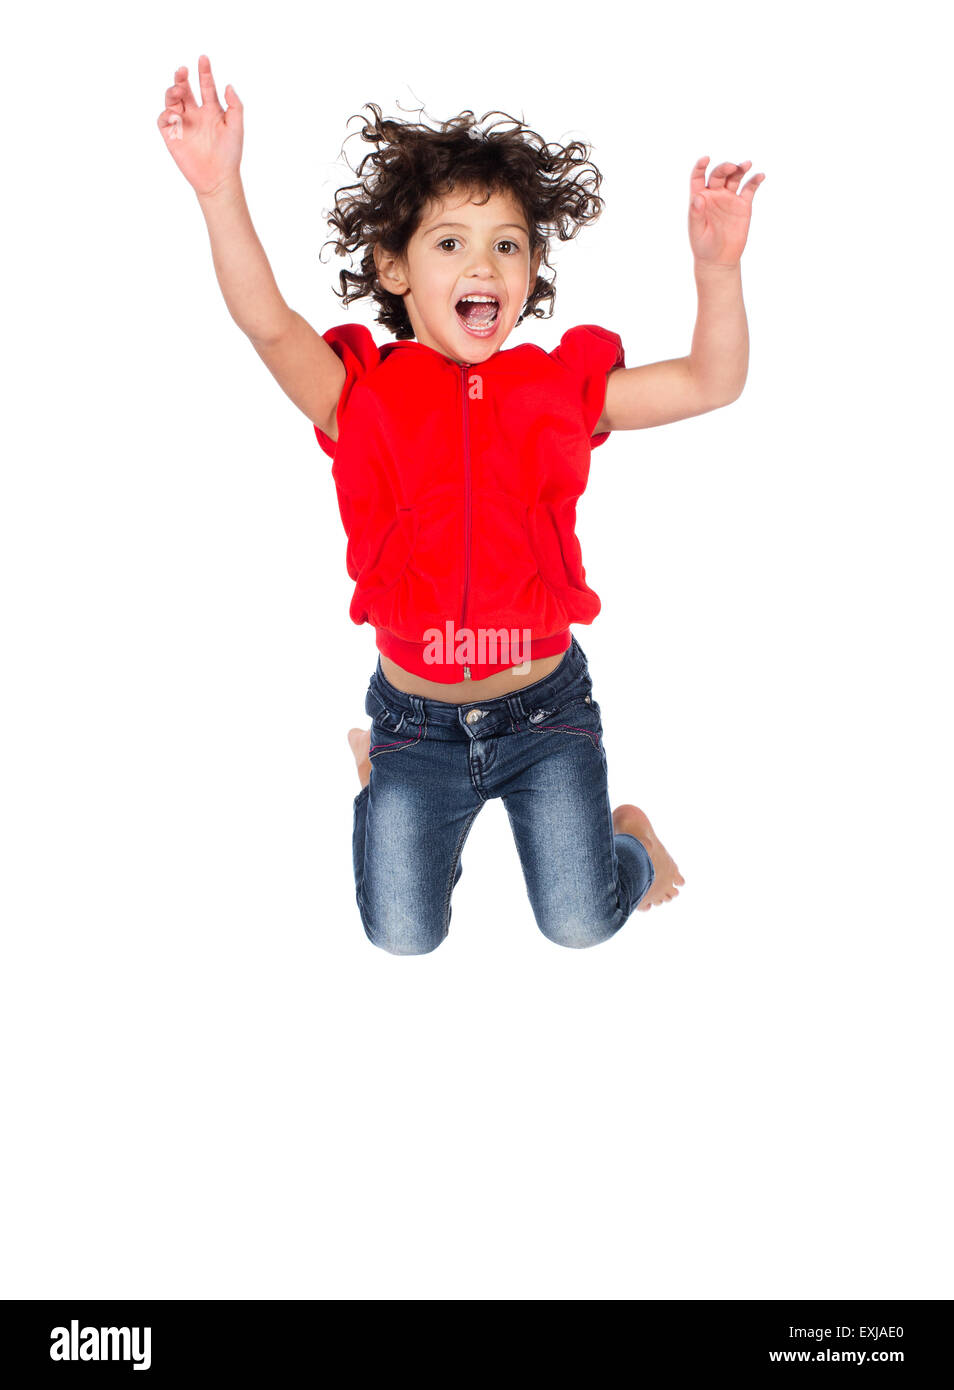 Adorable petit caucasien enfant avec des cheveux bouclés portant un haut à capuchon rouge et bleu jeans. La jeune fille saute et souriant. Banque D'Images